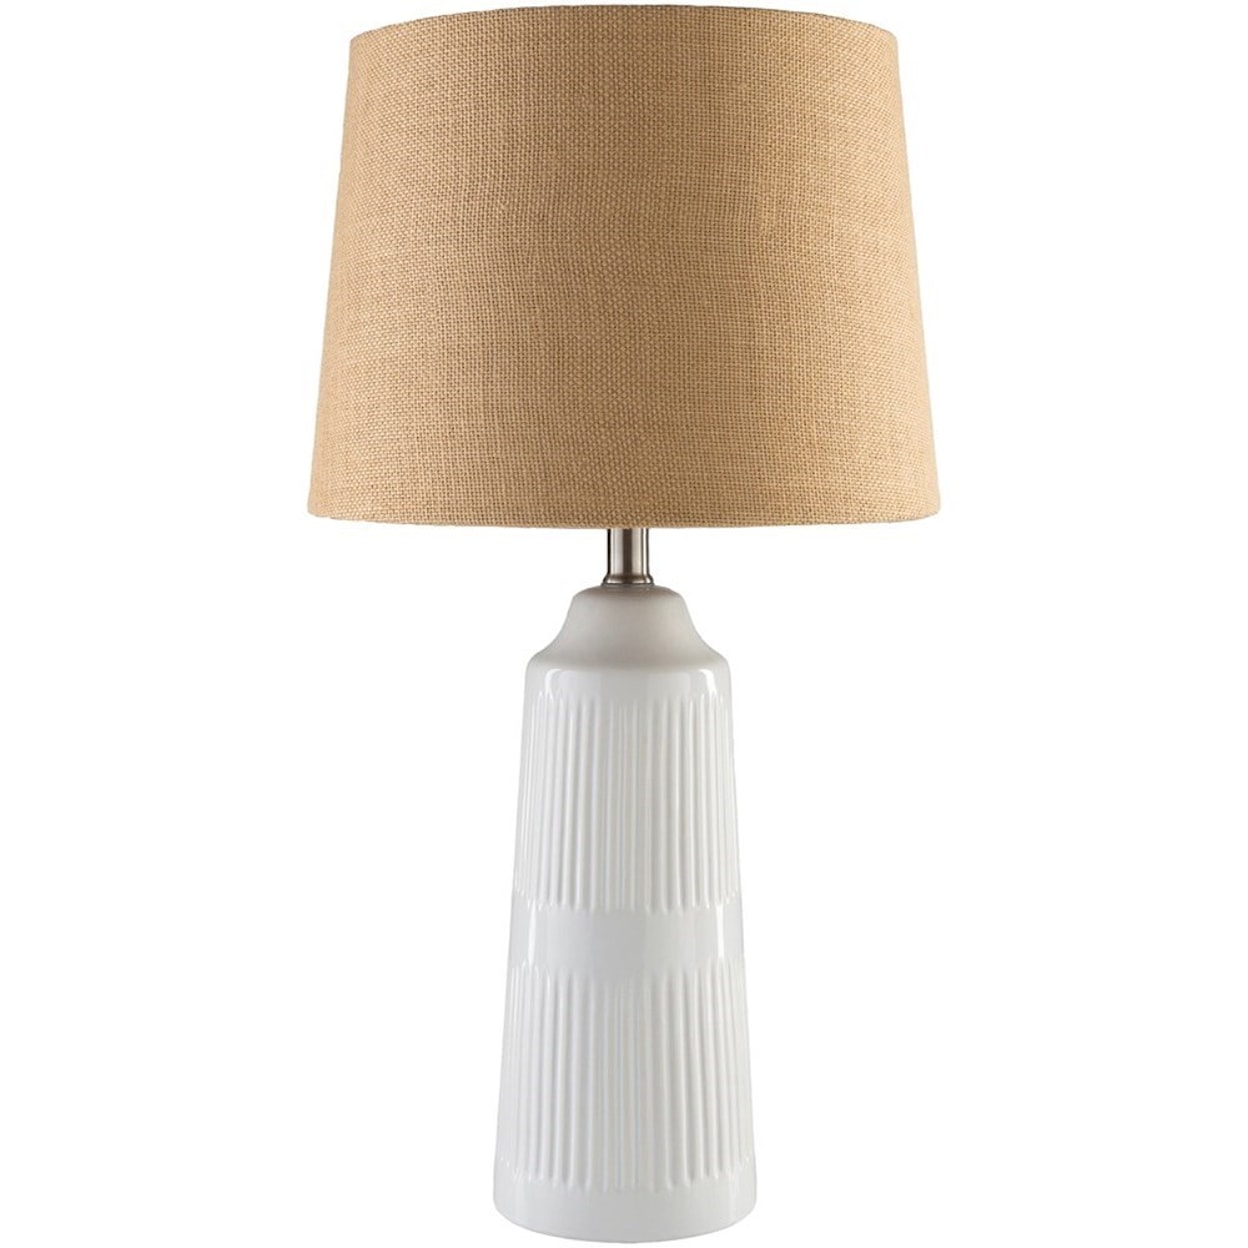 Surya Tellico White Coastal Table Lamp